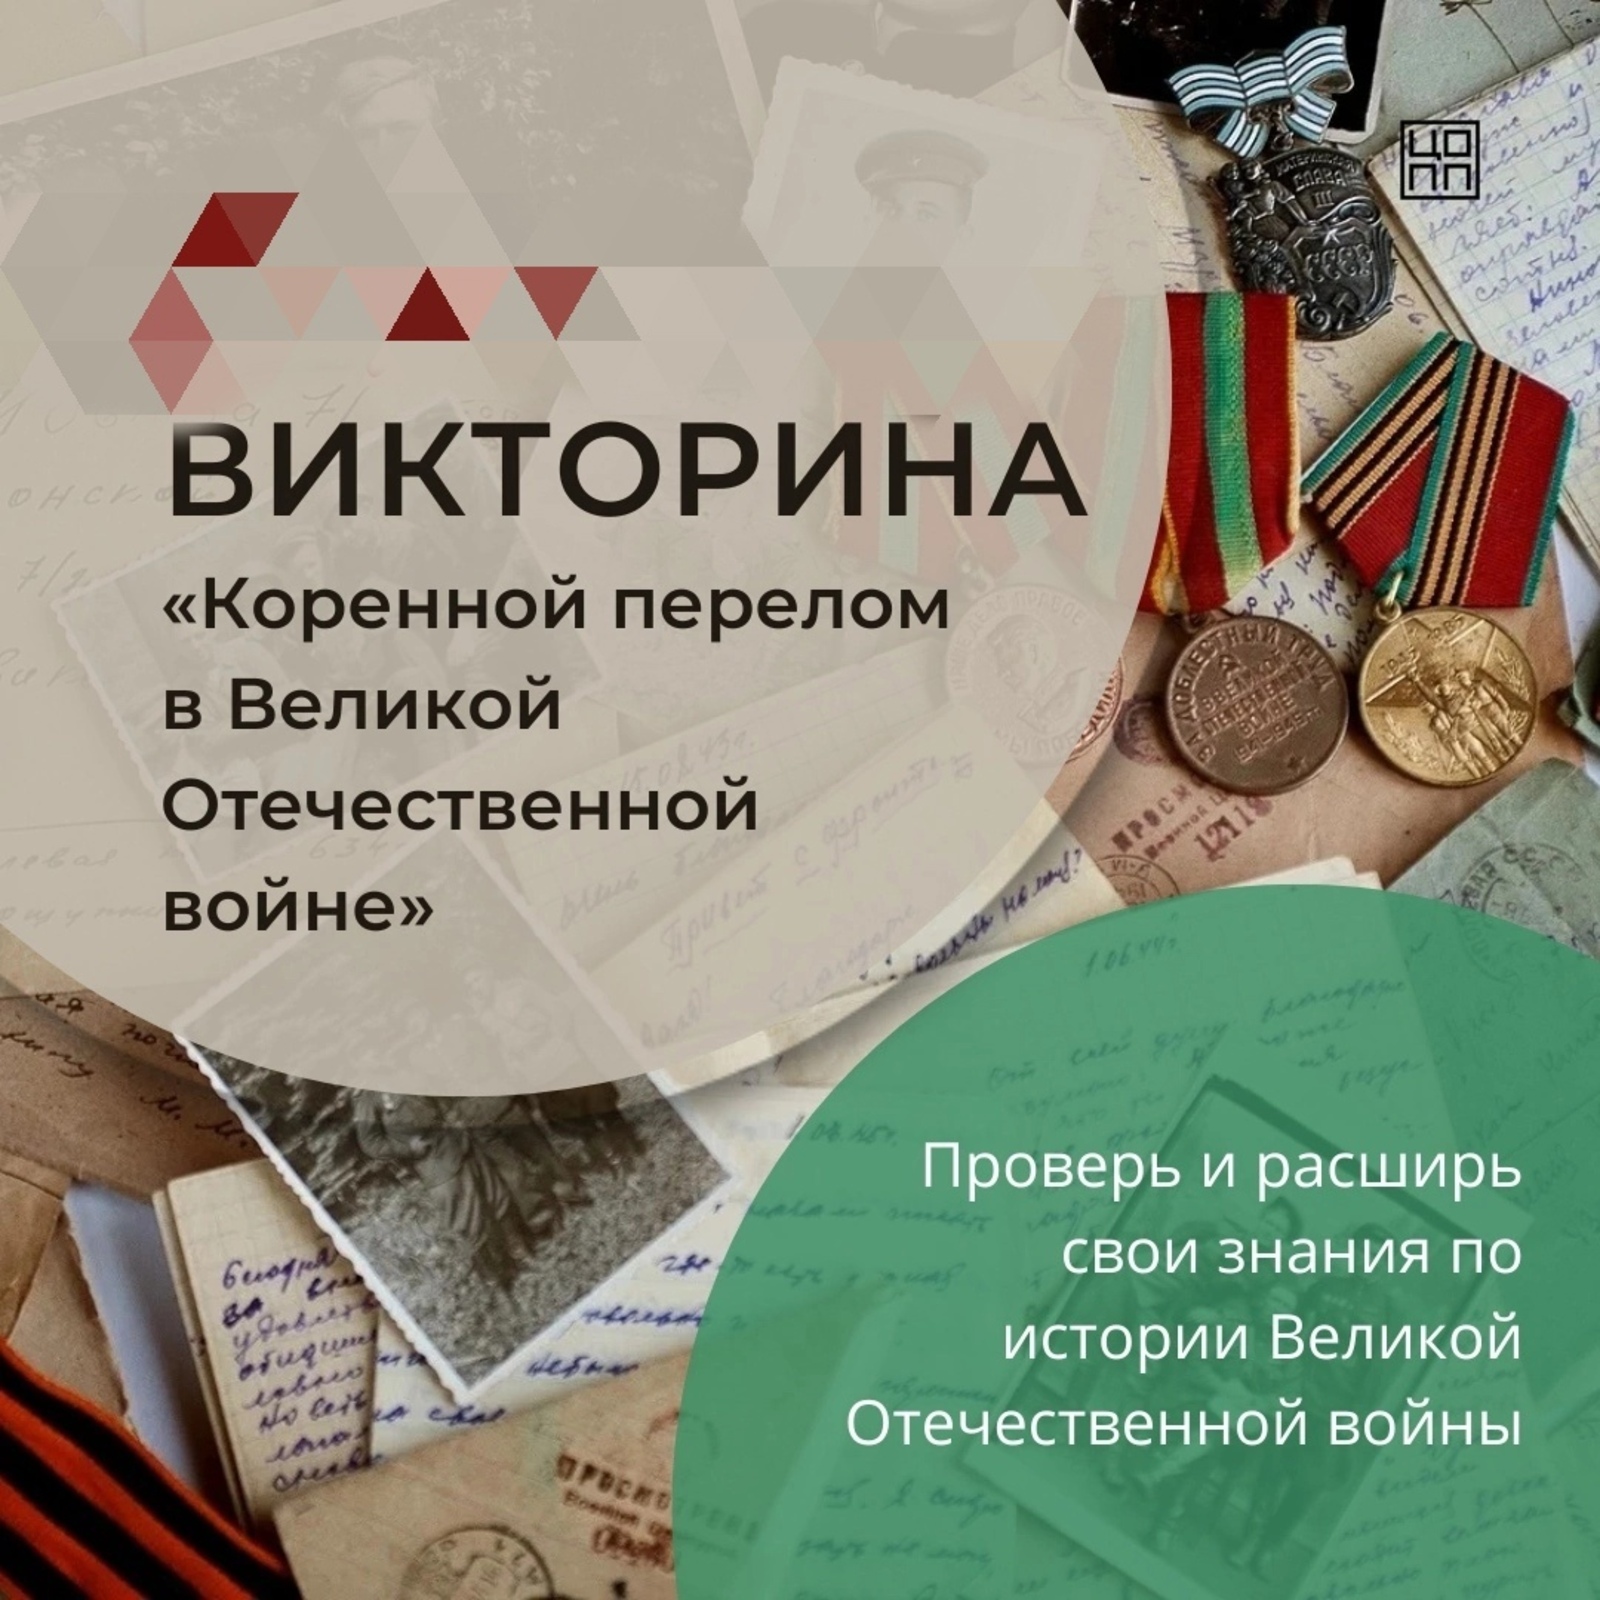 Примите участие в онлайн-викторине «Коренной перелом в Великой Отечественной войне»